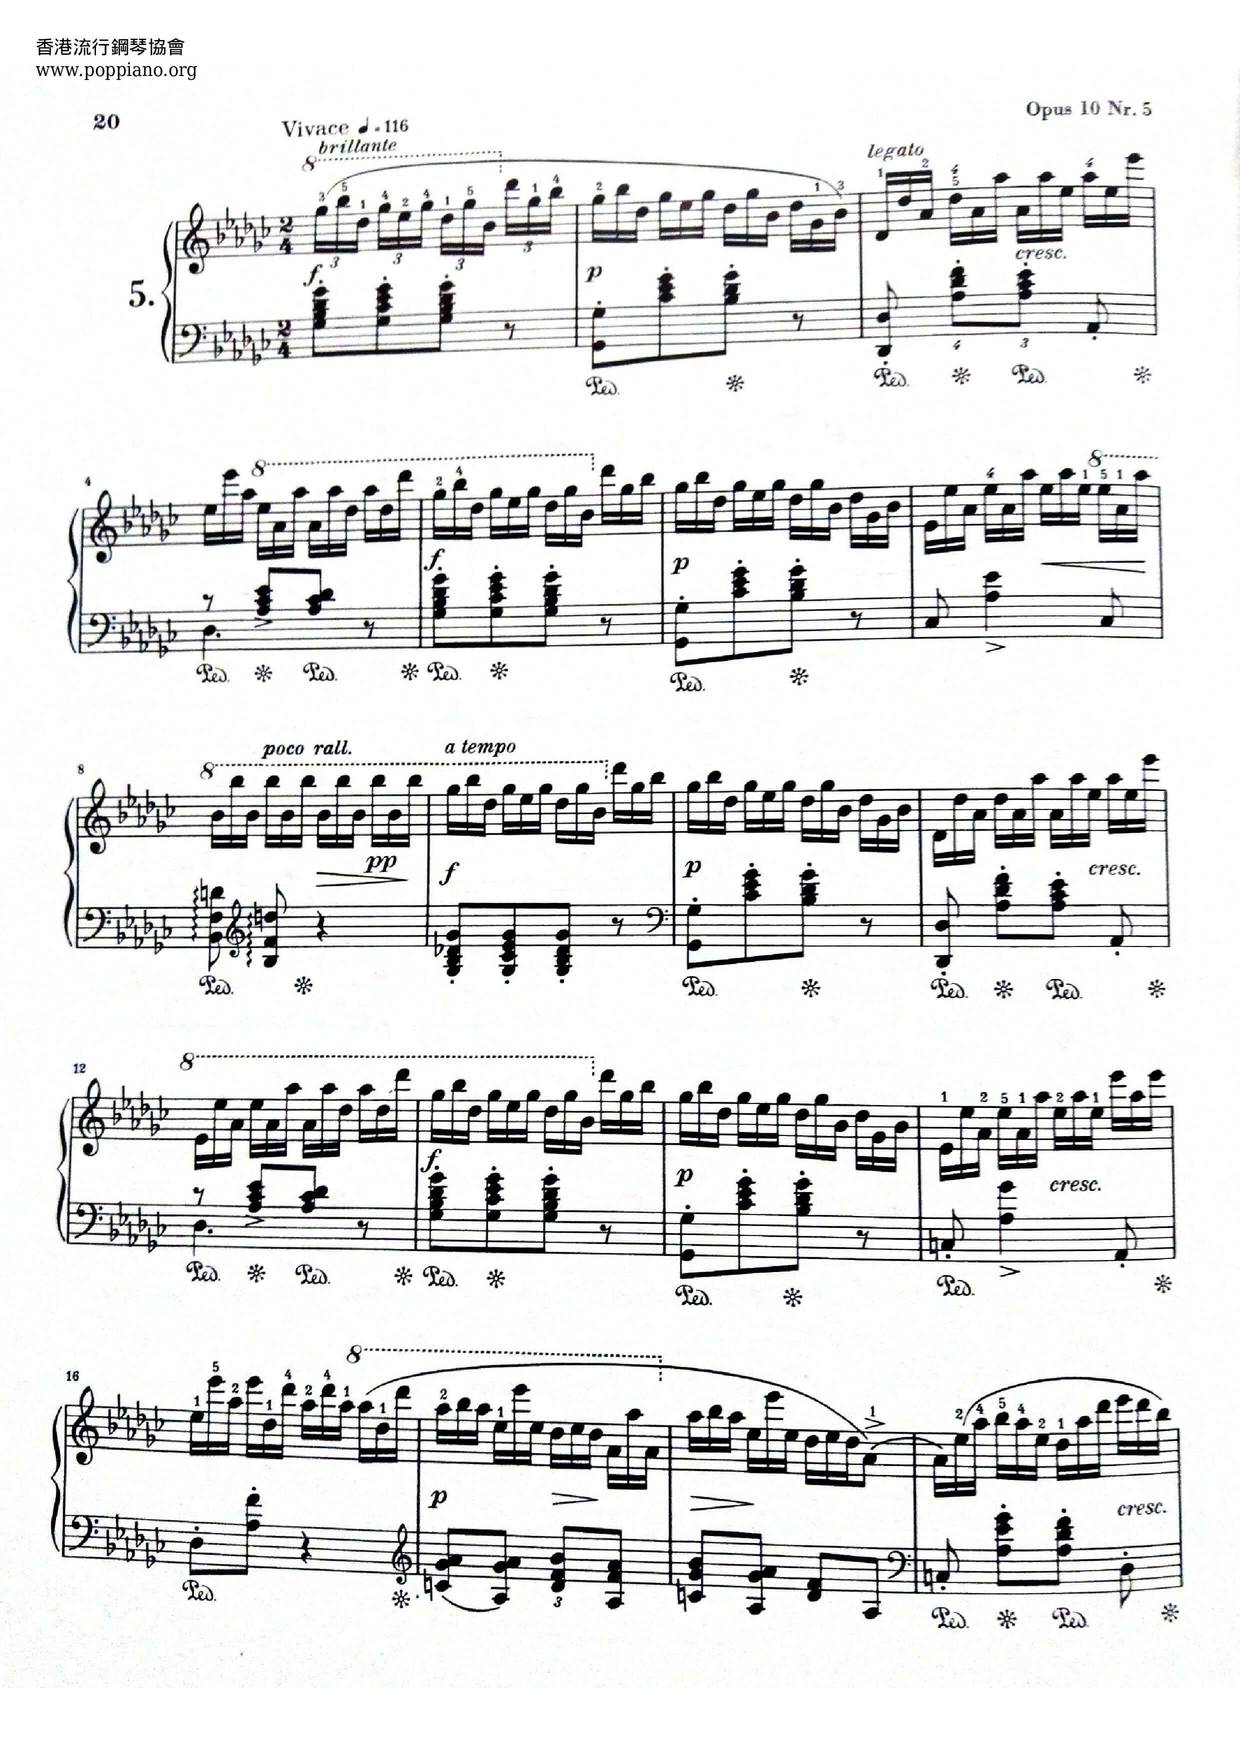 Chopin Etude Op. 10, No. 5 Score